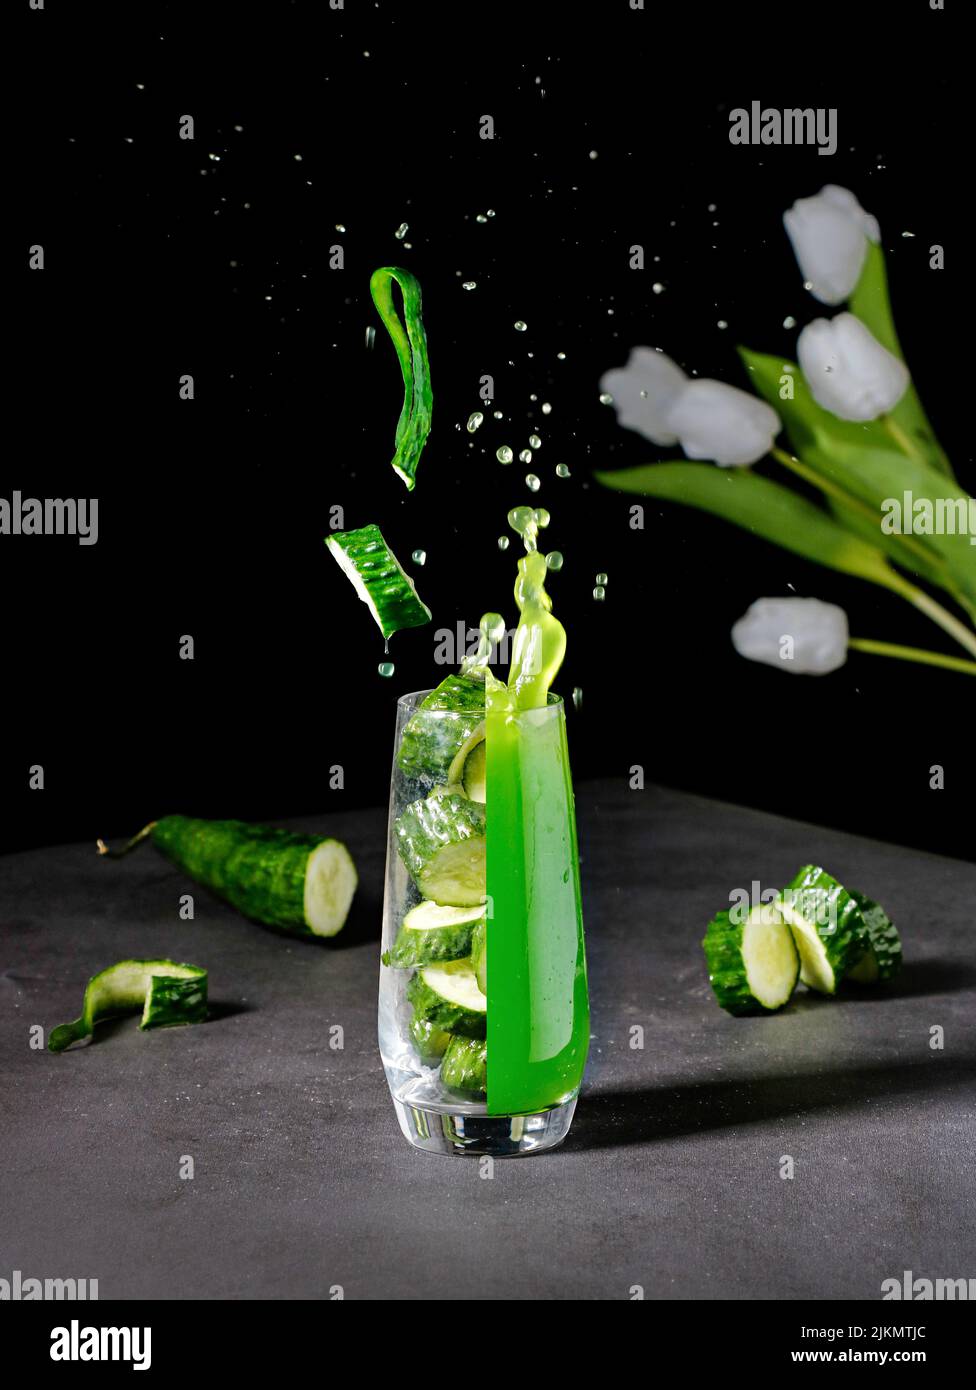 Un vivace shot estetico di un bicchiere diviso in un succo fresco e pezzi di cetriolo Foto Stock